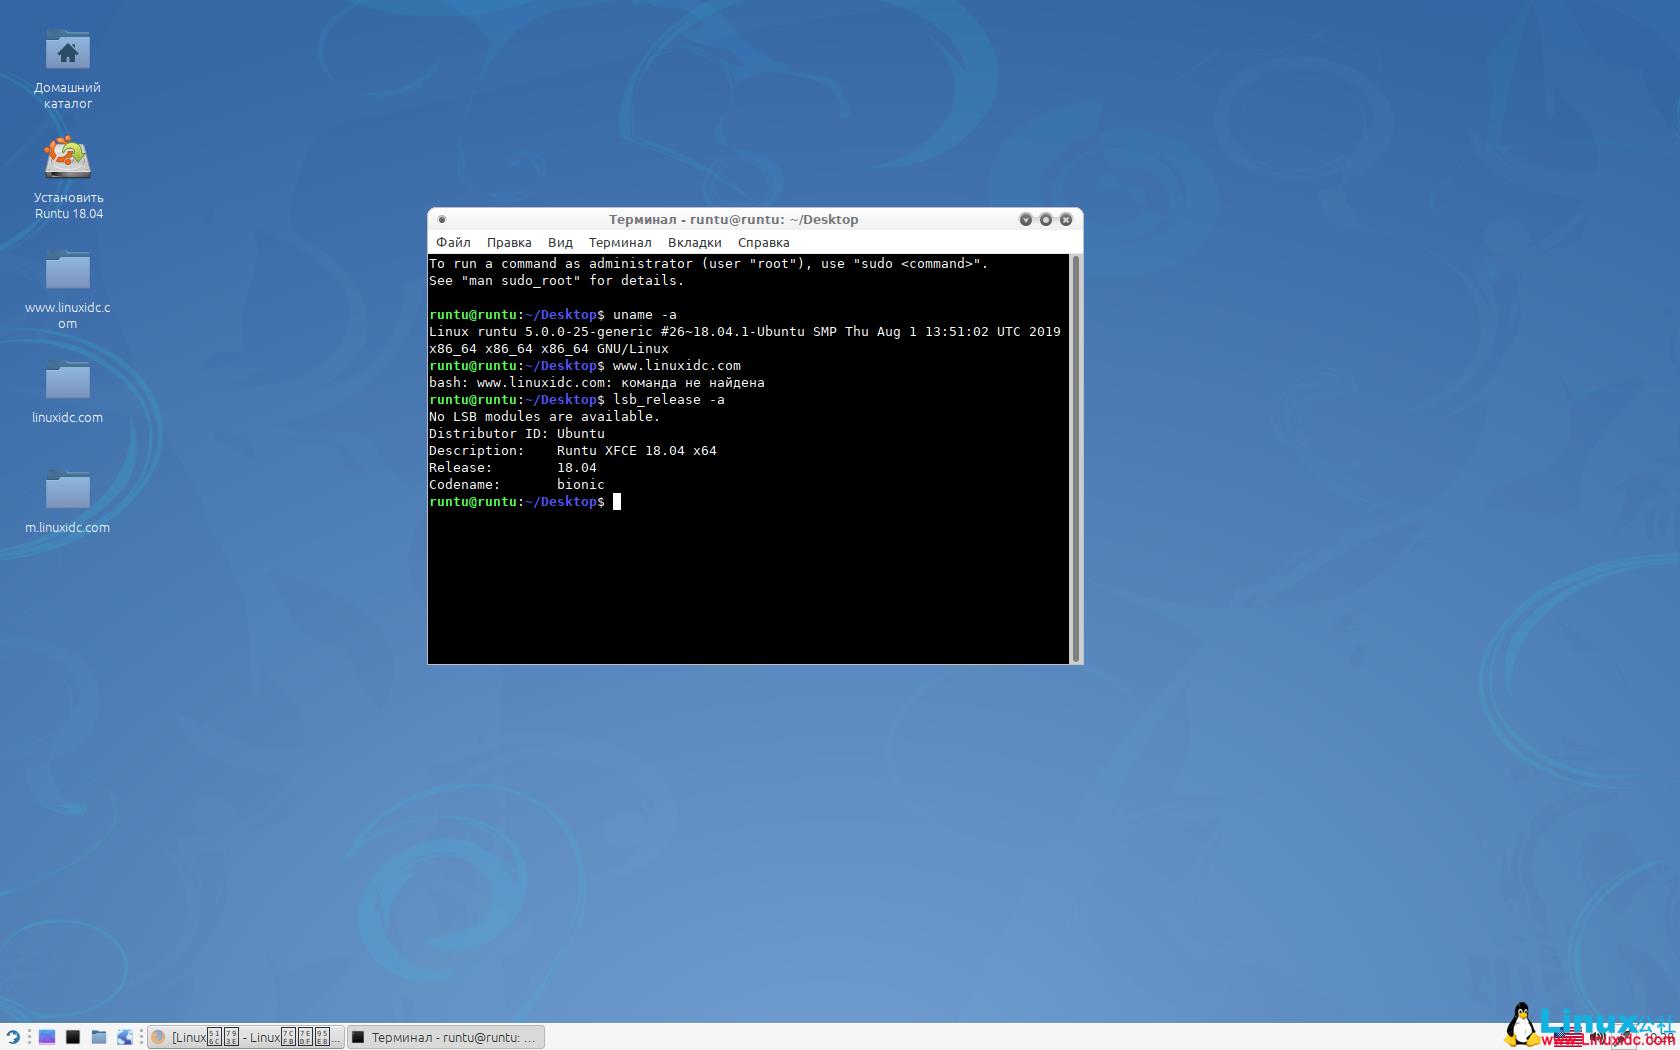 俄语桌面Linux发行版Runtu 18.04.3 正式发布 - 文章图片